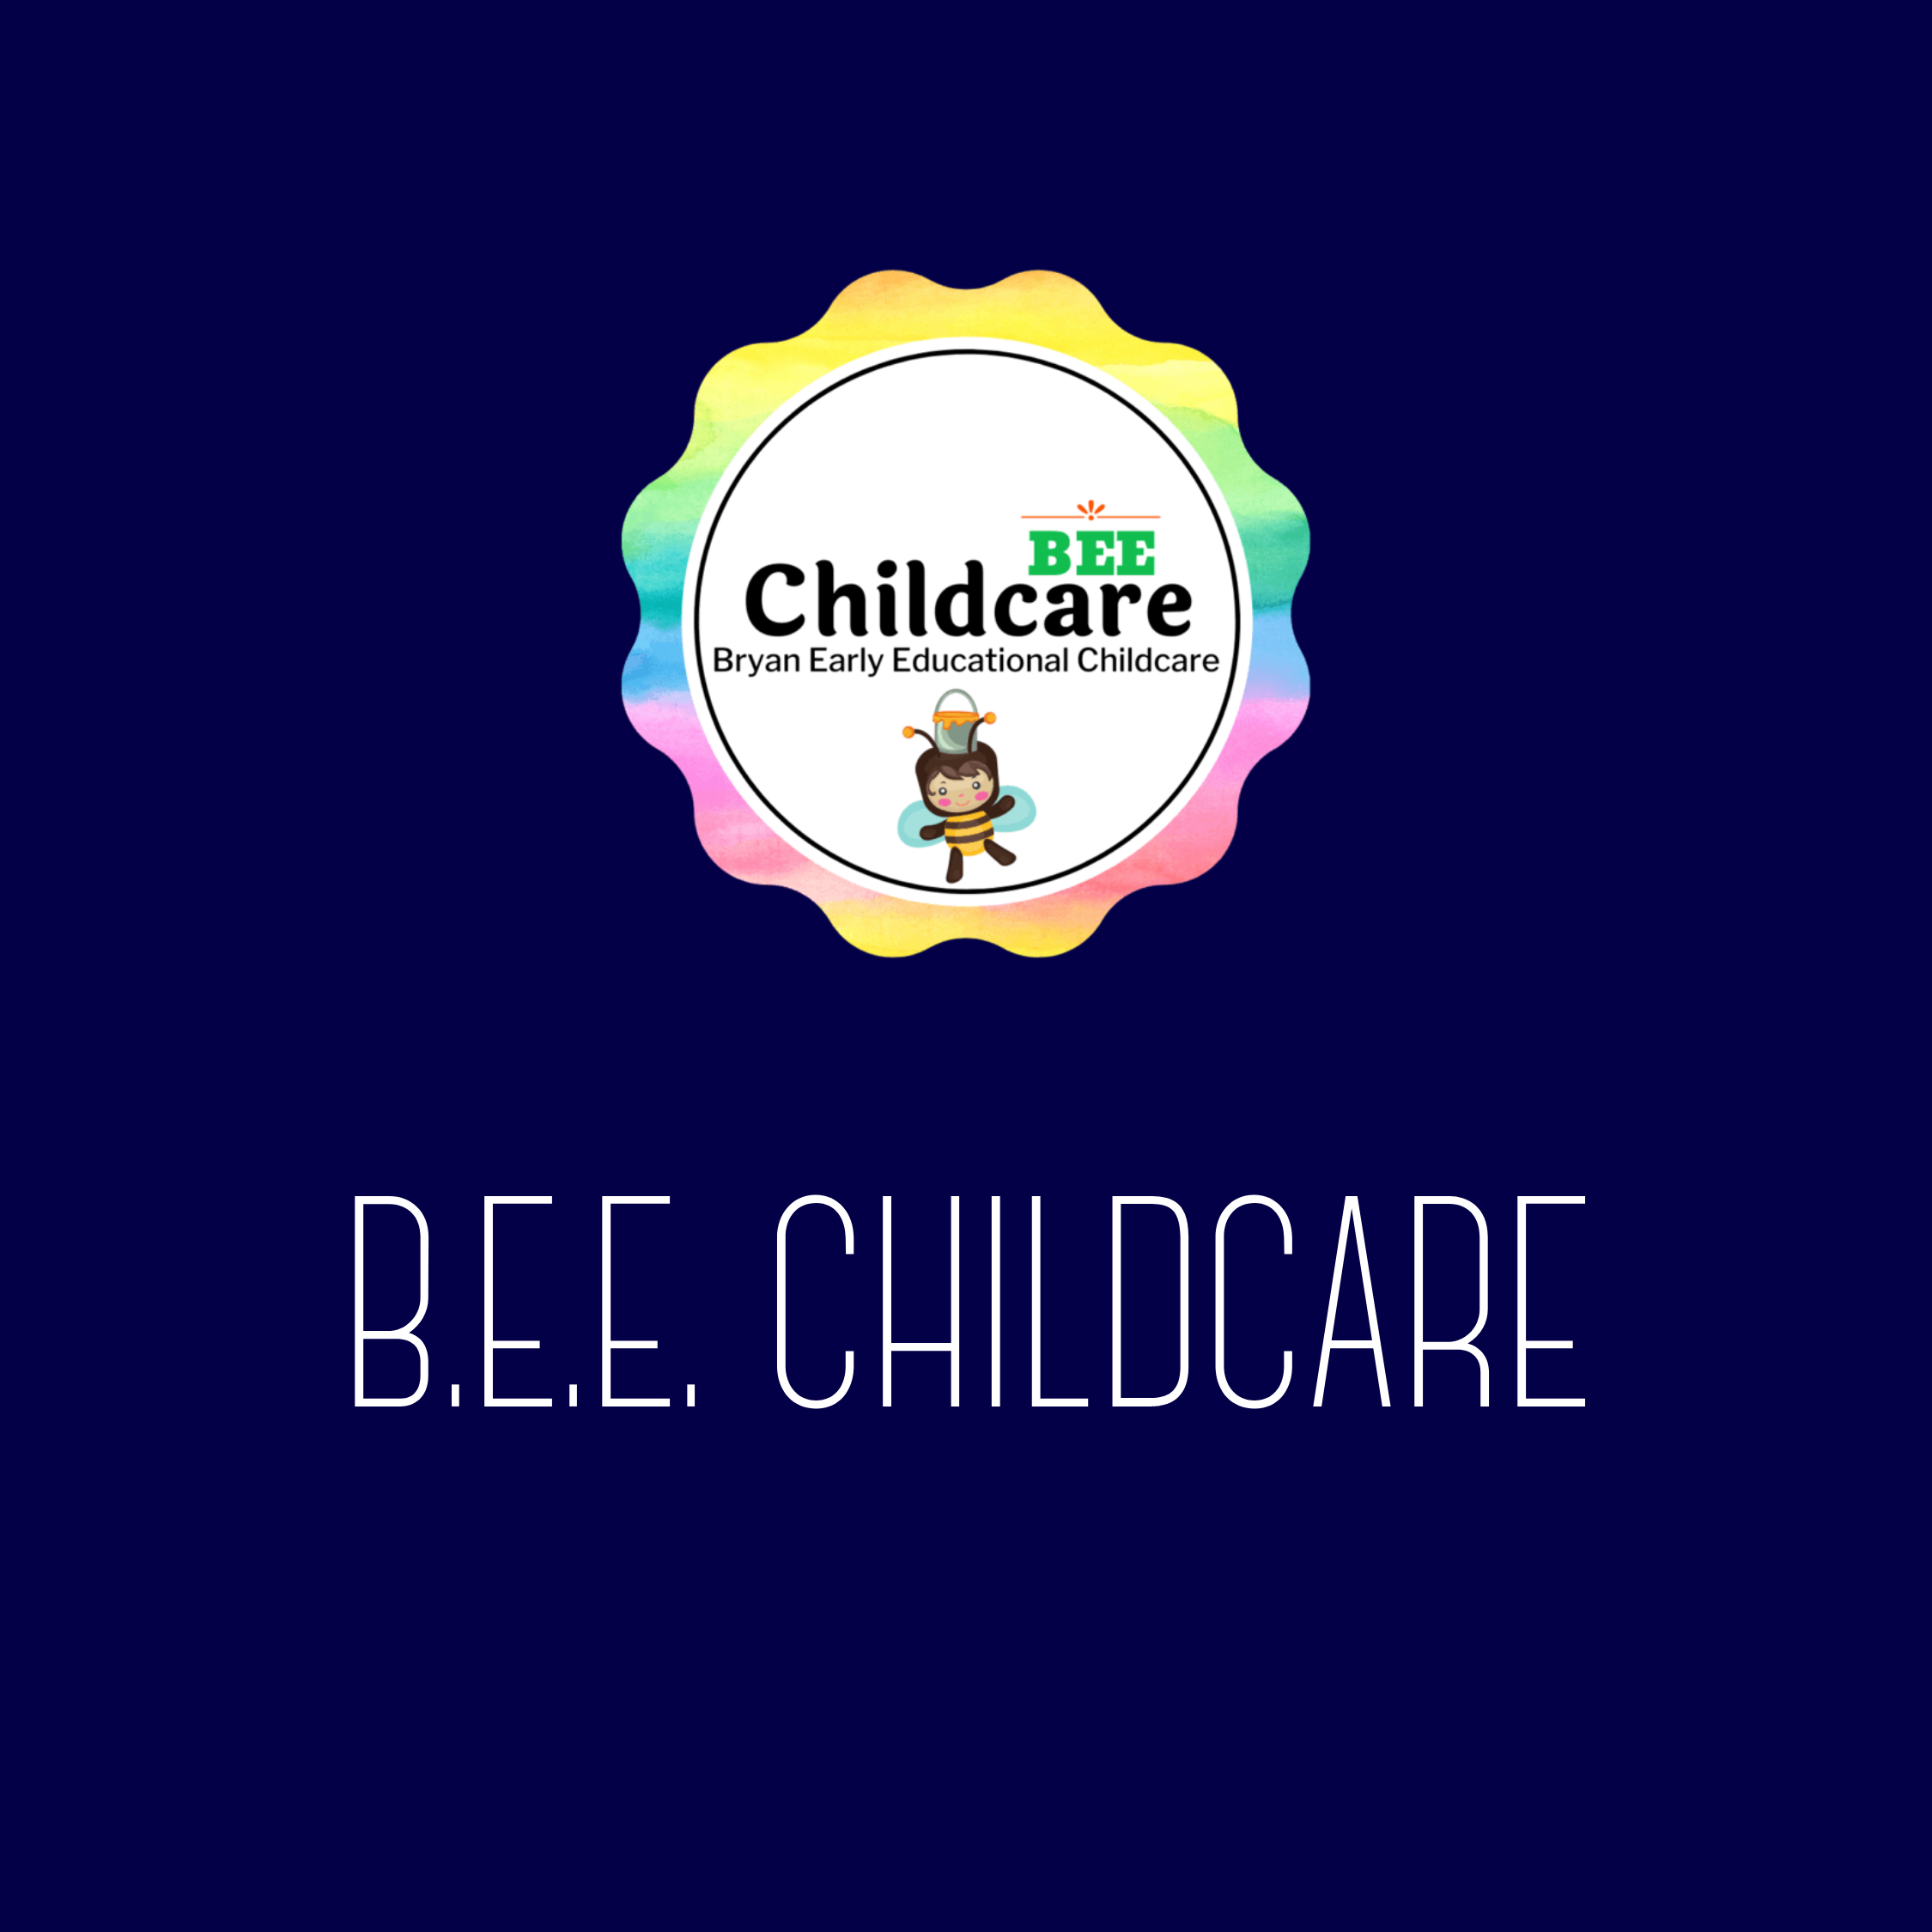 B.E.E. Childcare